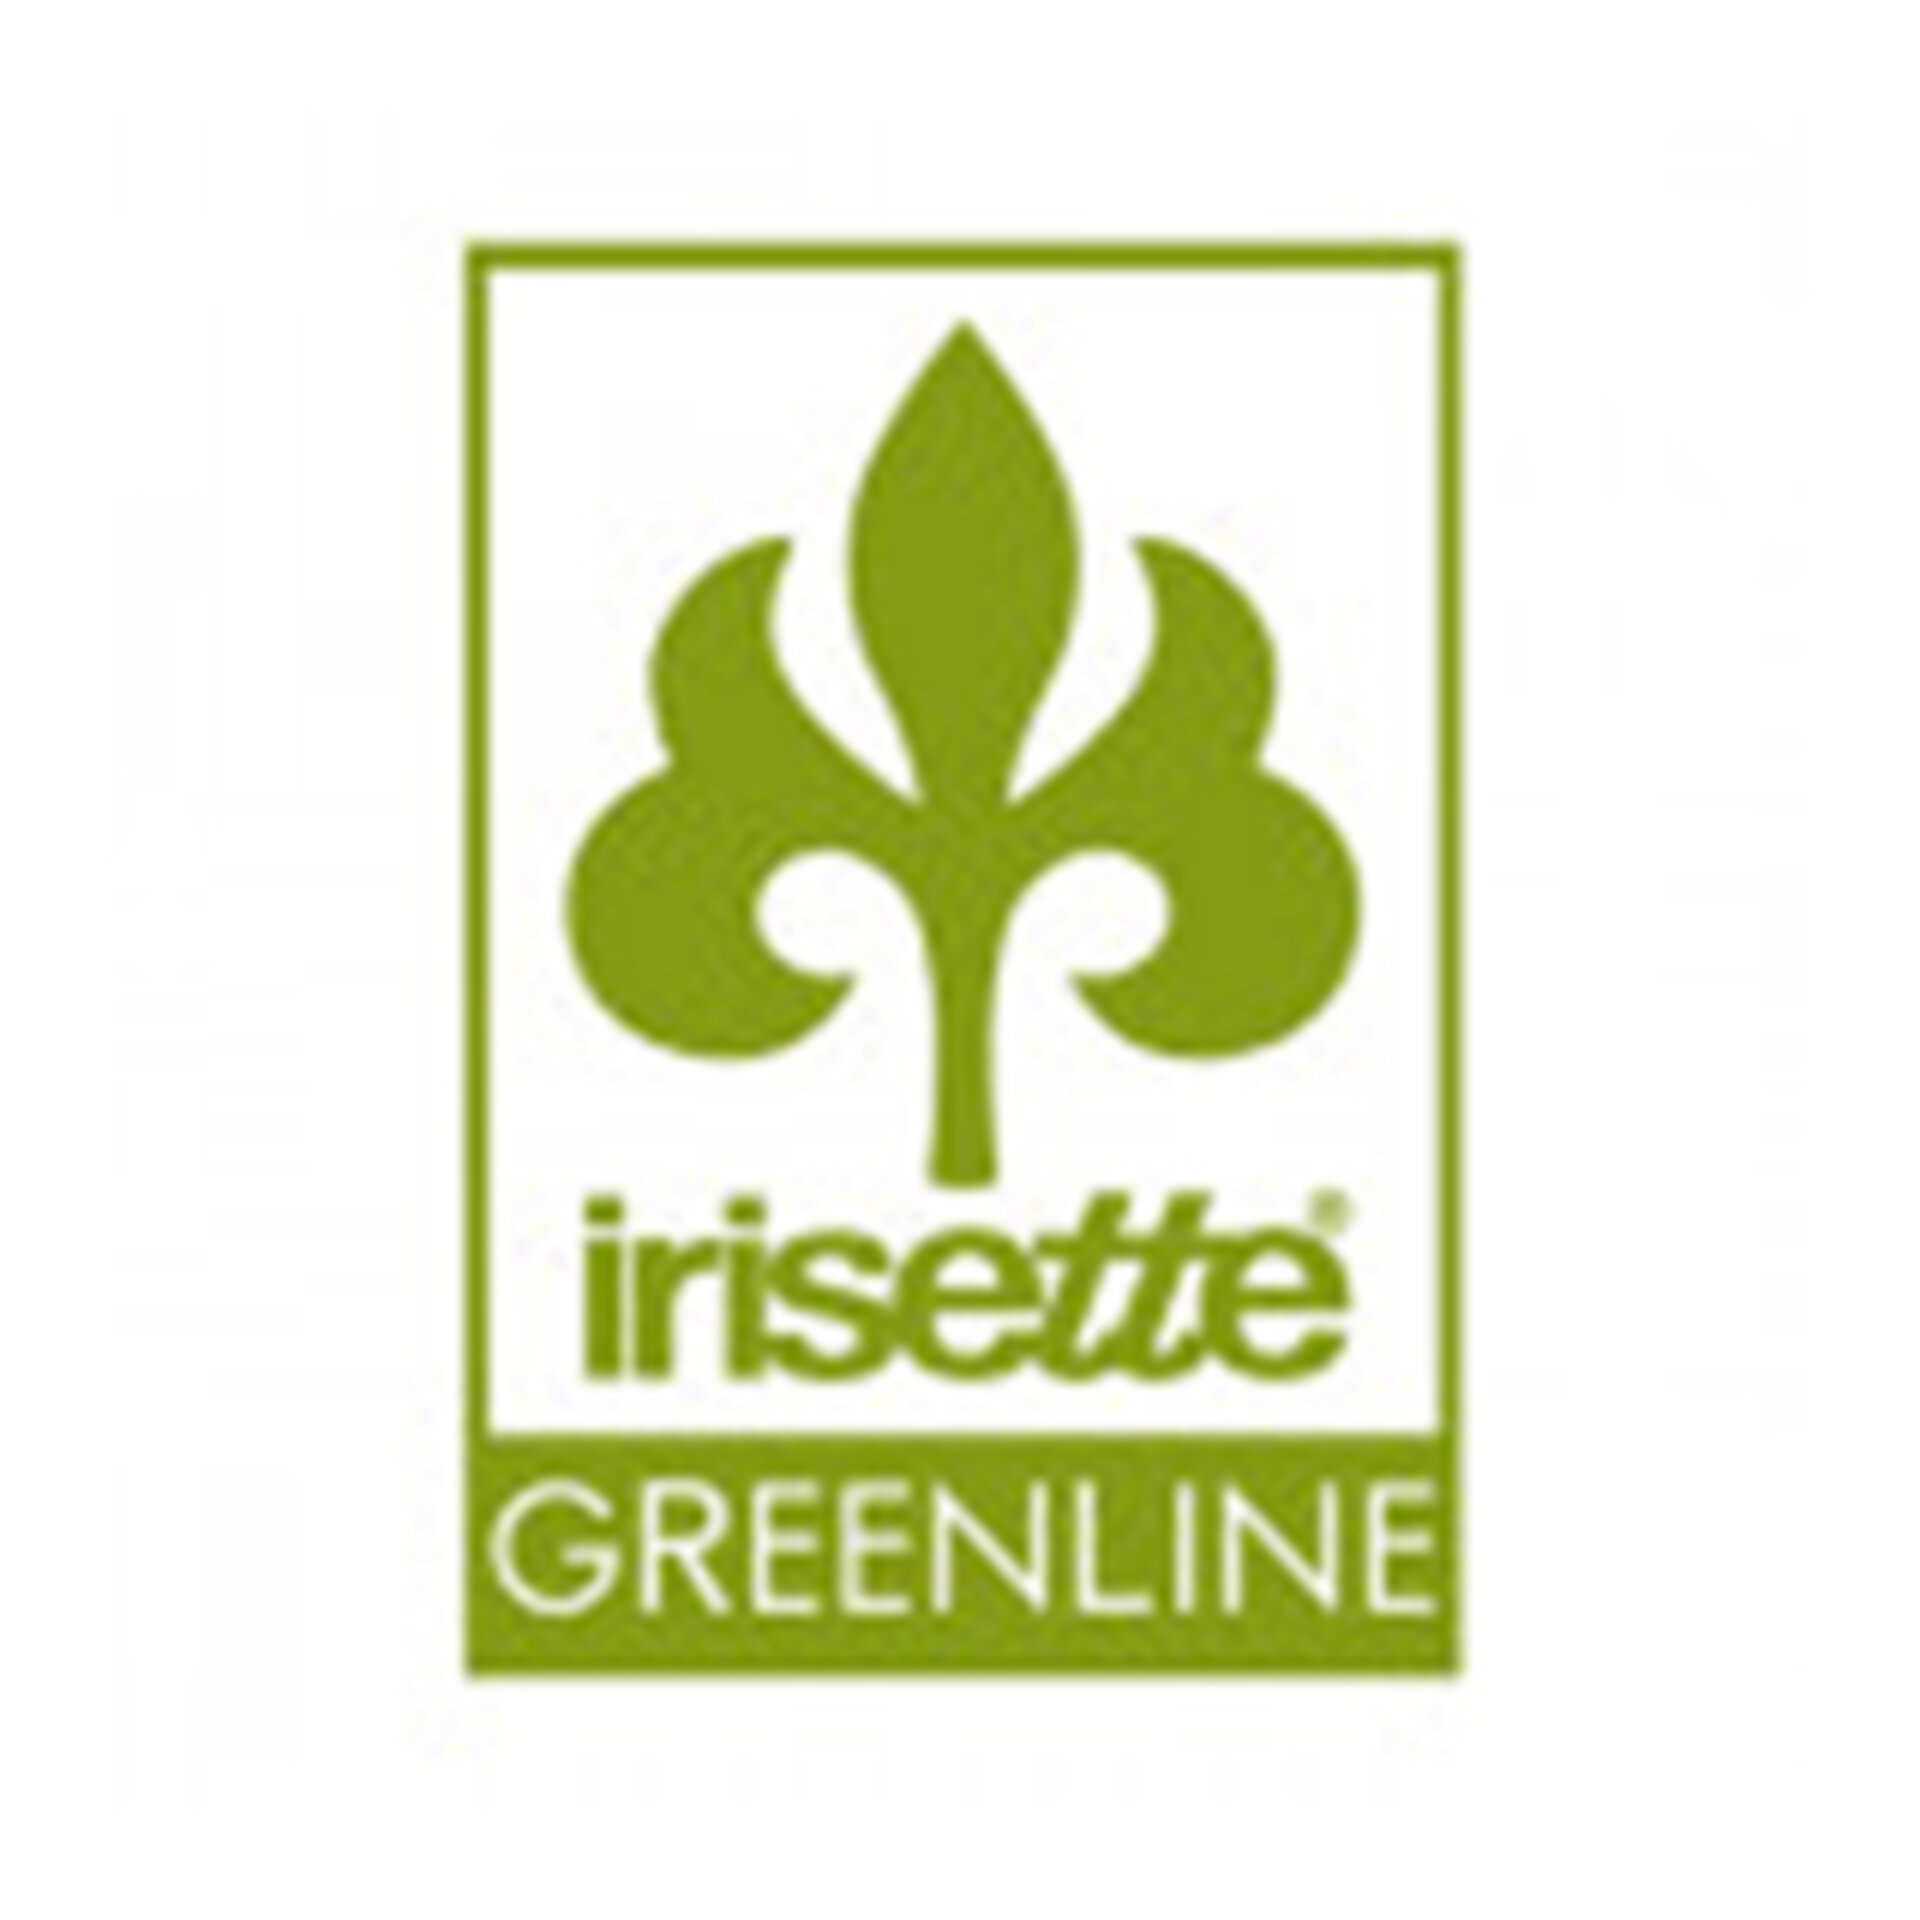 Marken-Logo "irisette Greenline"